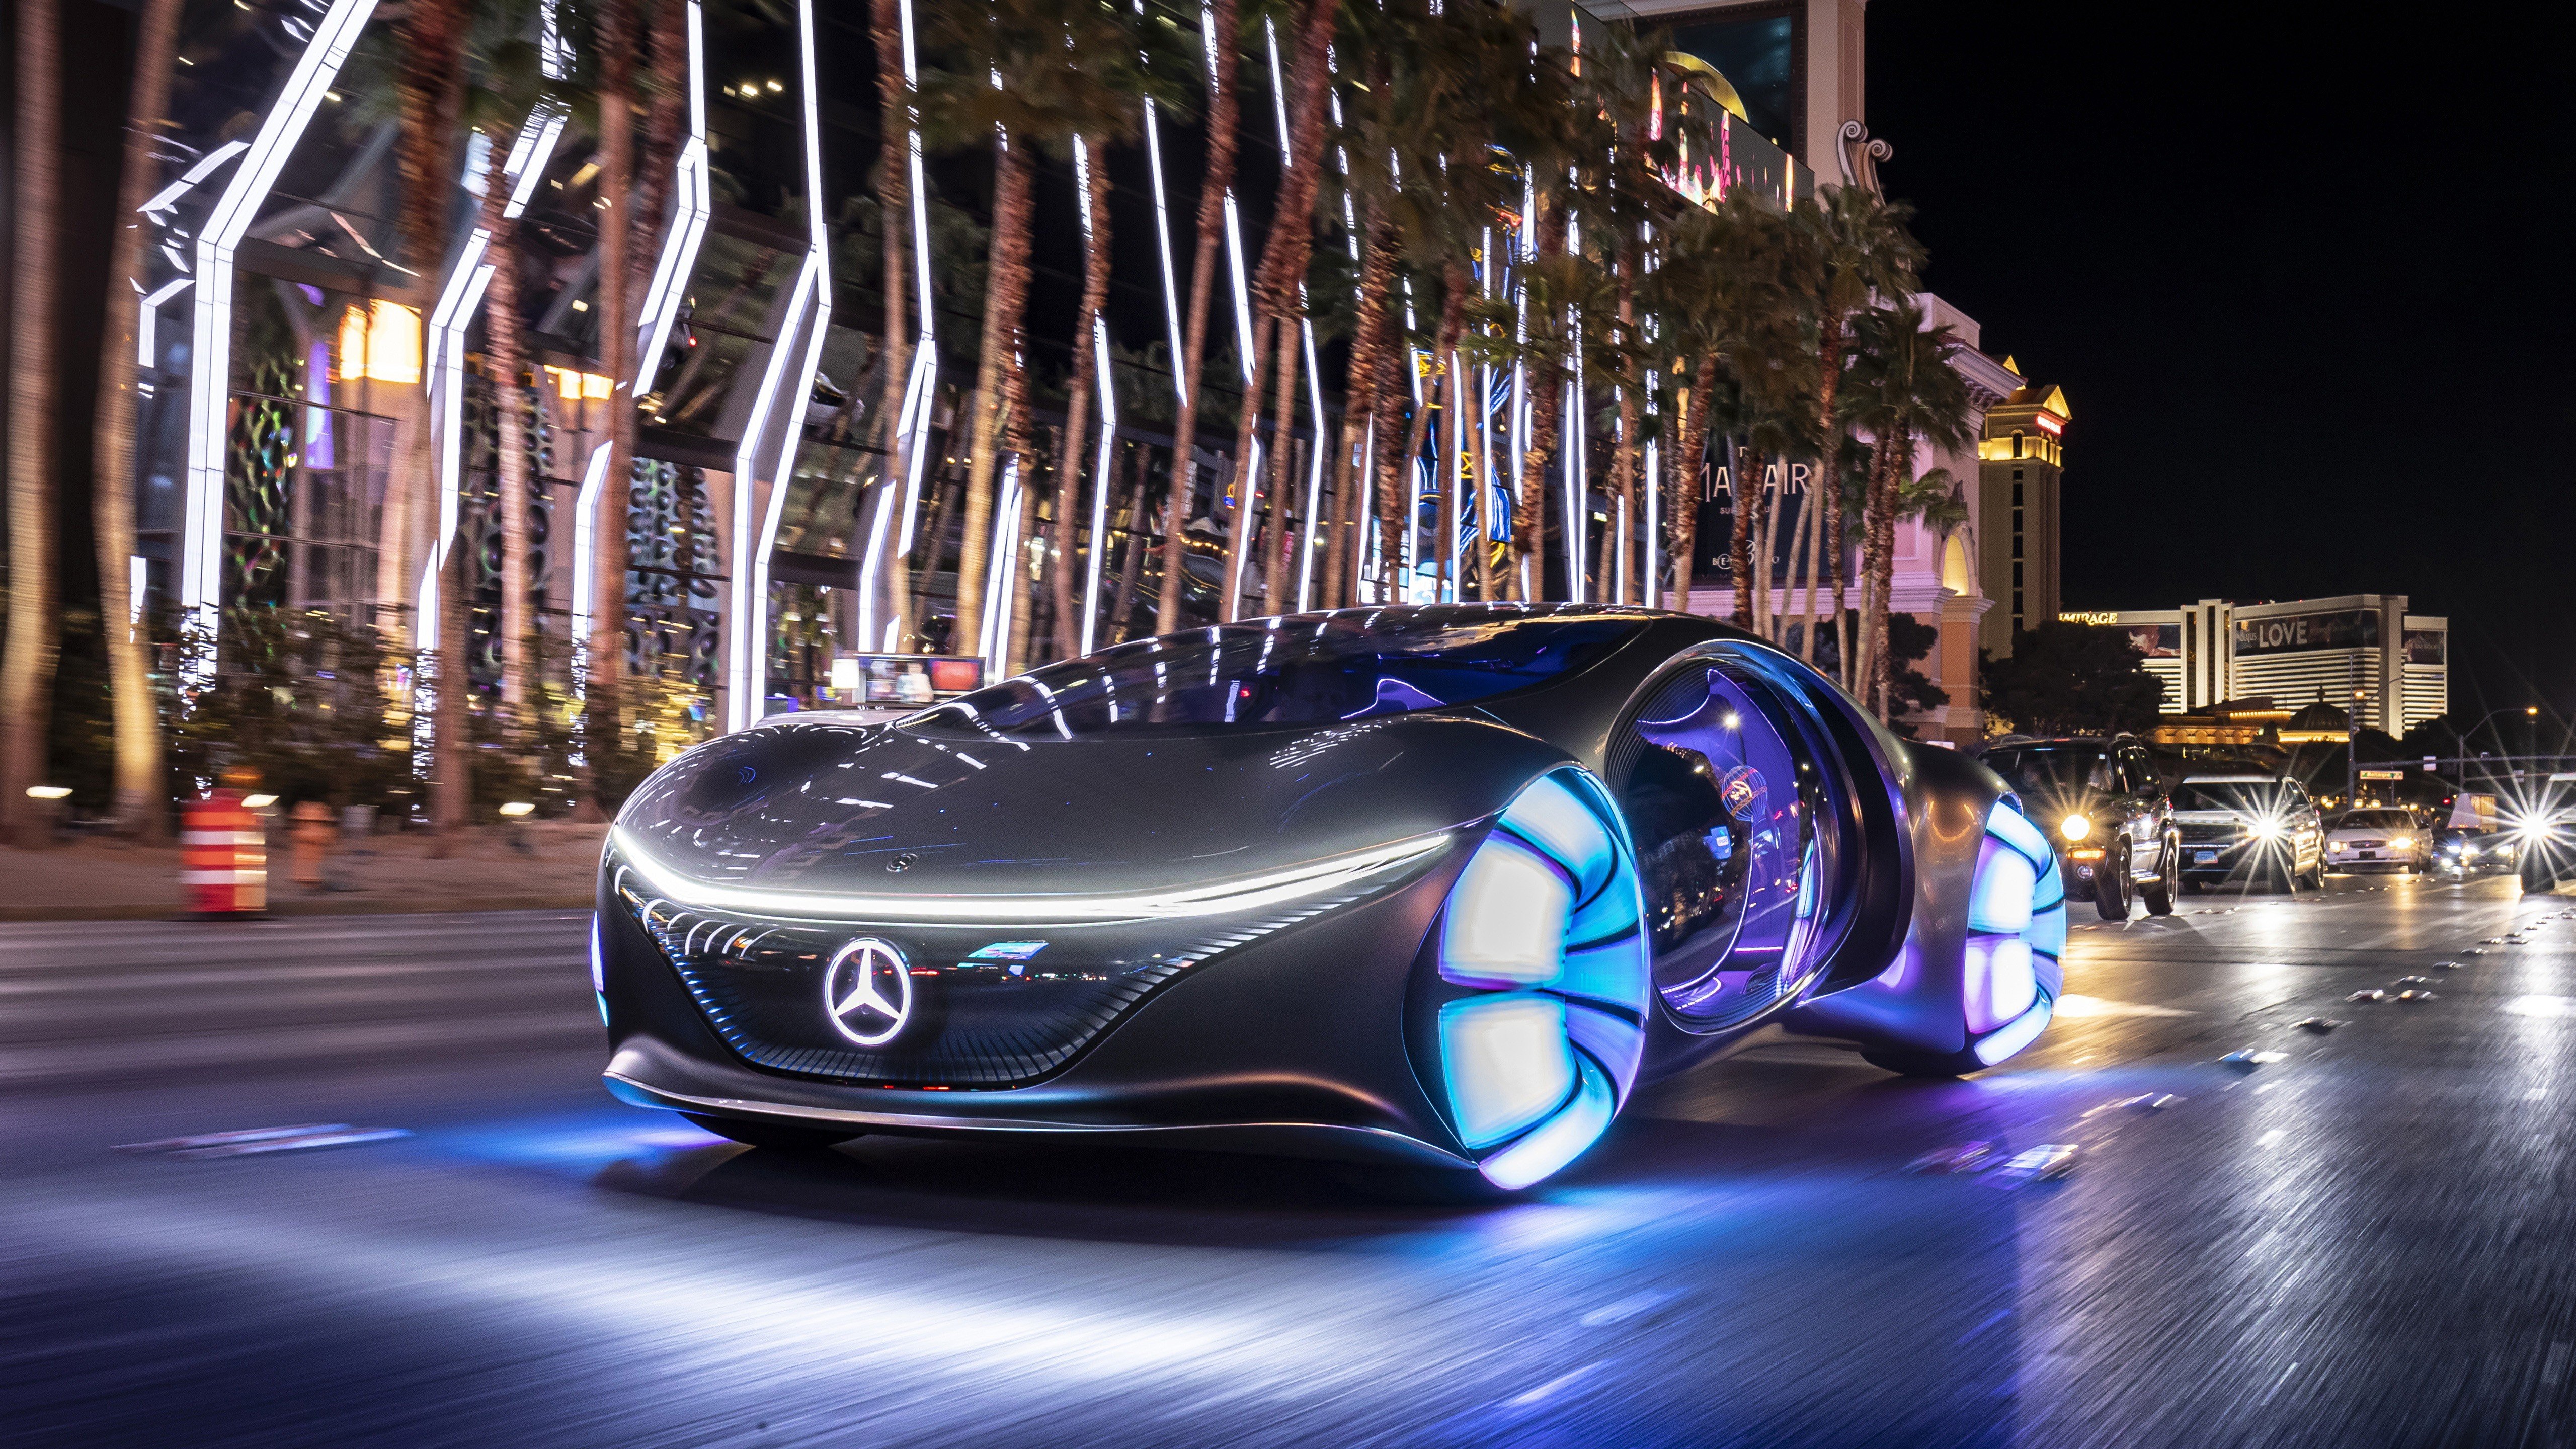 Fondos de pantalla Mercedes Benz Vision AVTR 2020 Carro electrico